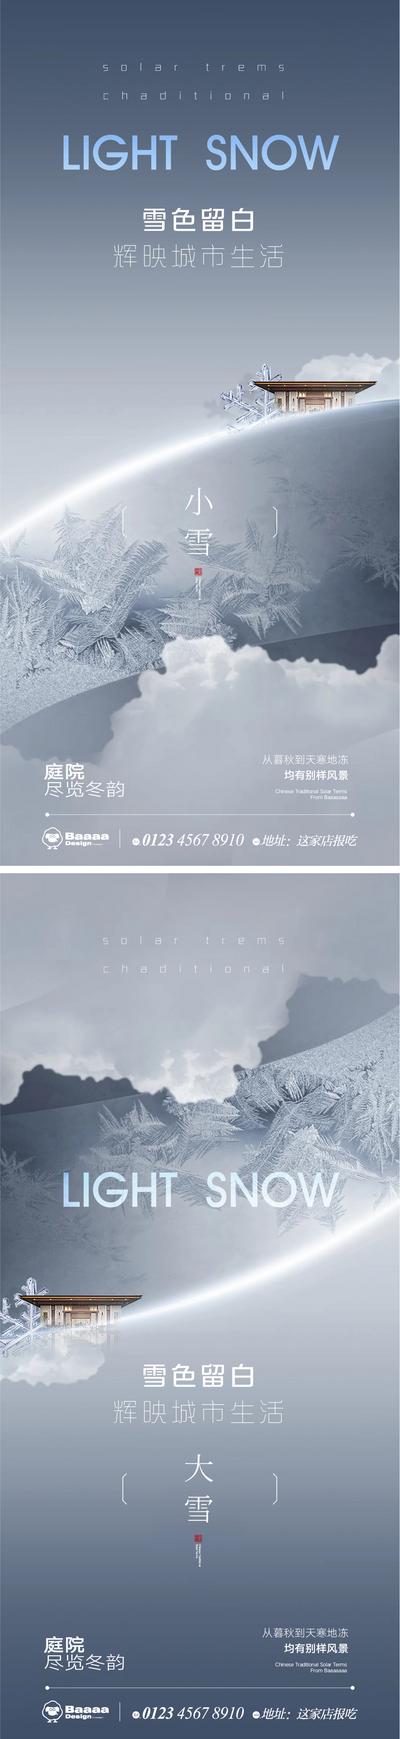 南门网 广告 海报 节气 系列 商业 小雪 大雪 肌理 大气 建筑 圈层 商圈 刷屏